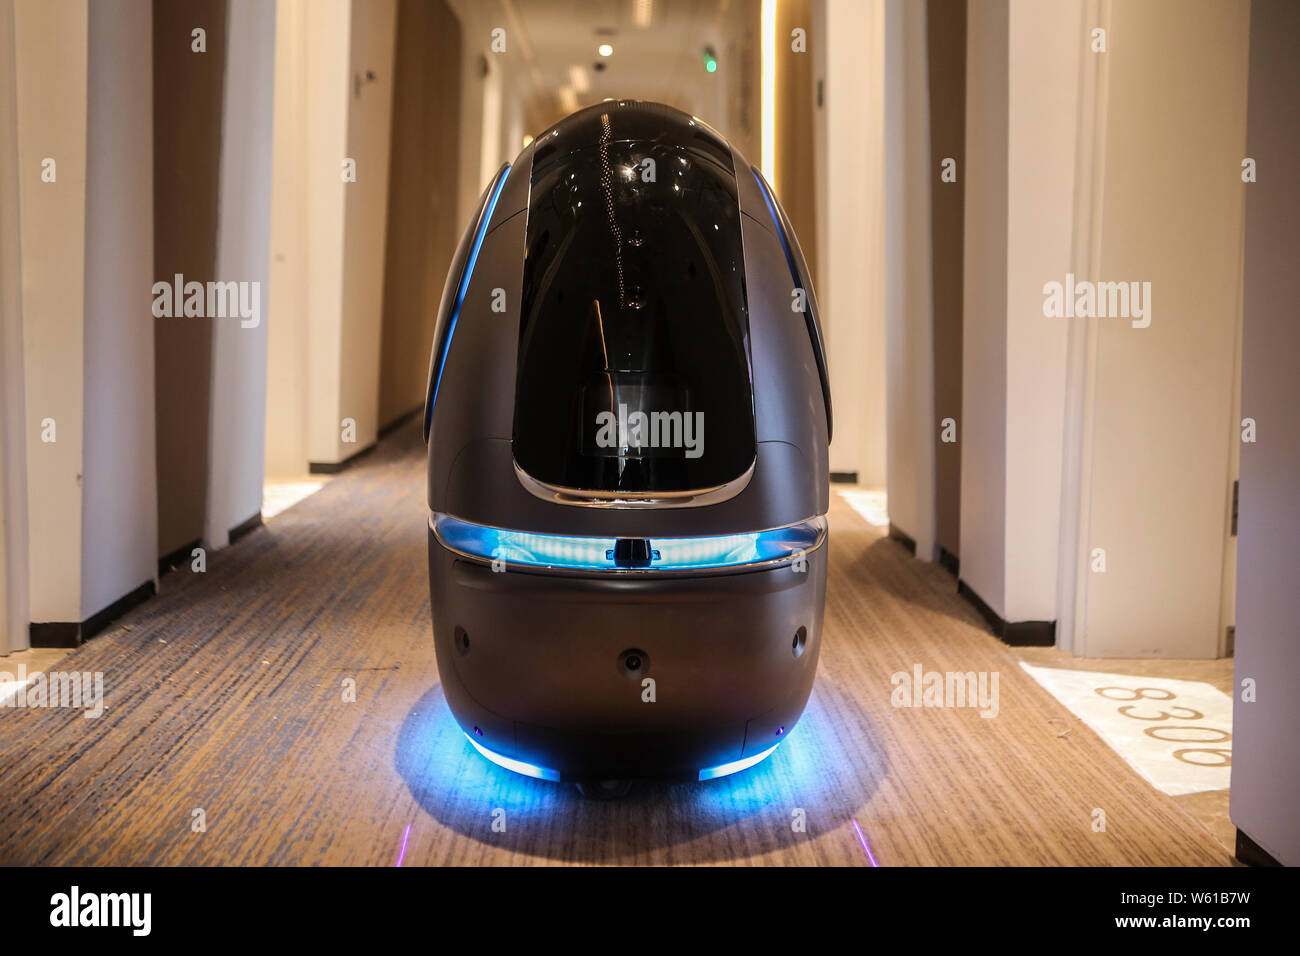 Un robot inteligente sirve en el futuro Alibaba Hotel - Hotel Zoo mosca del  gigante chino del comercio electrónico Alibaba Group en la ciudad de  Hangzhou, China oriental Zheji Fotografía de stock -